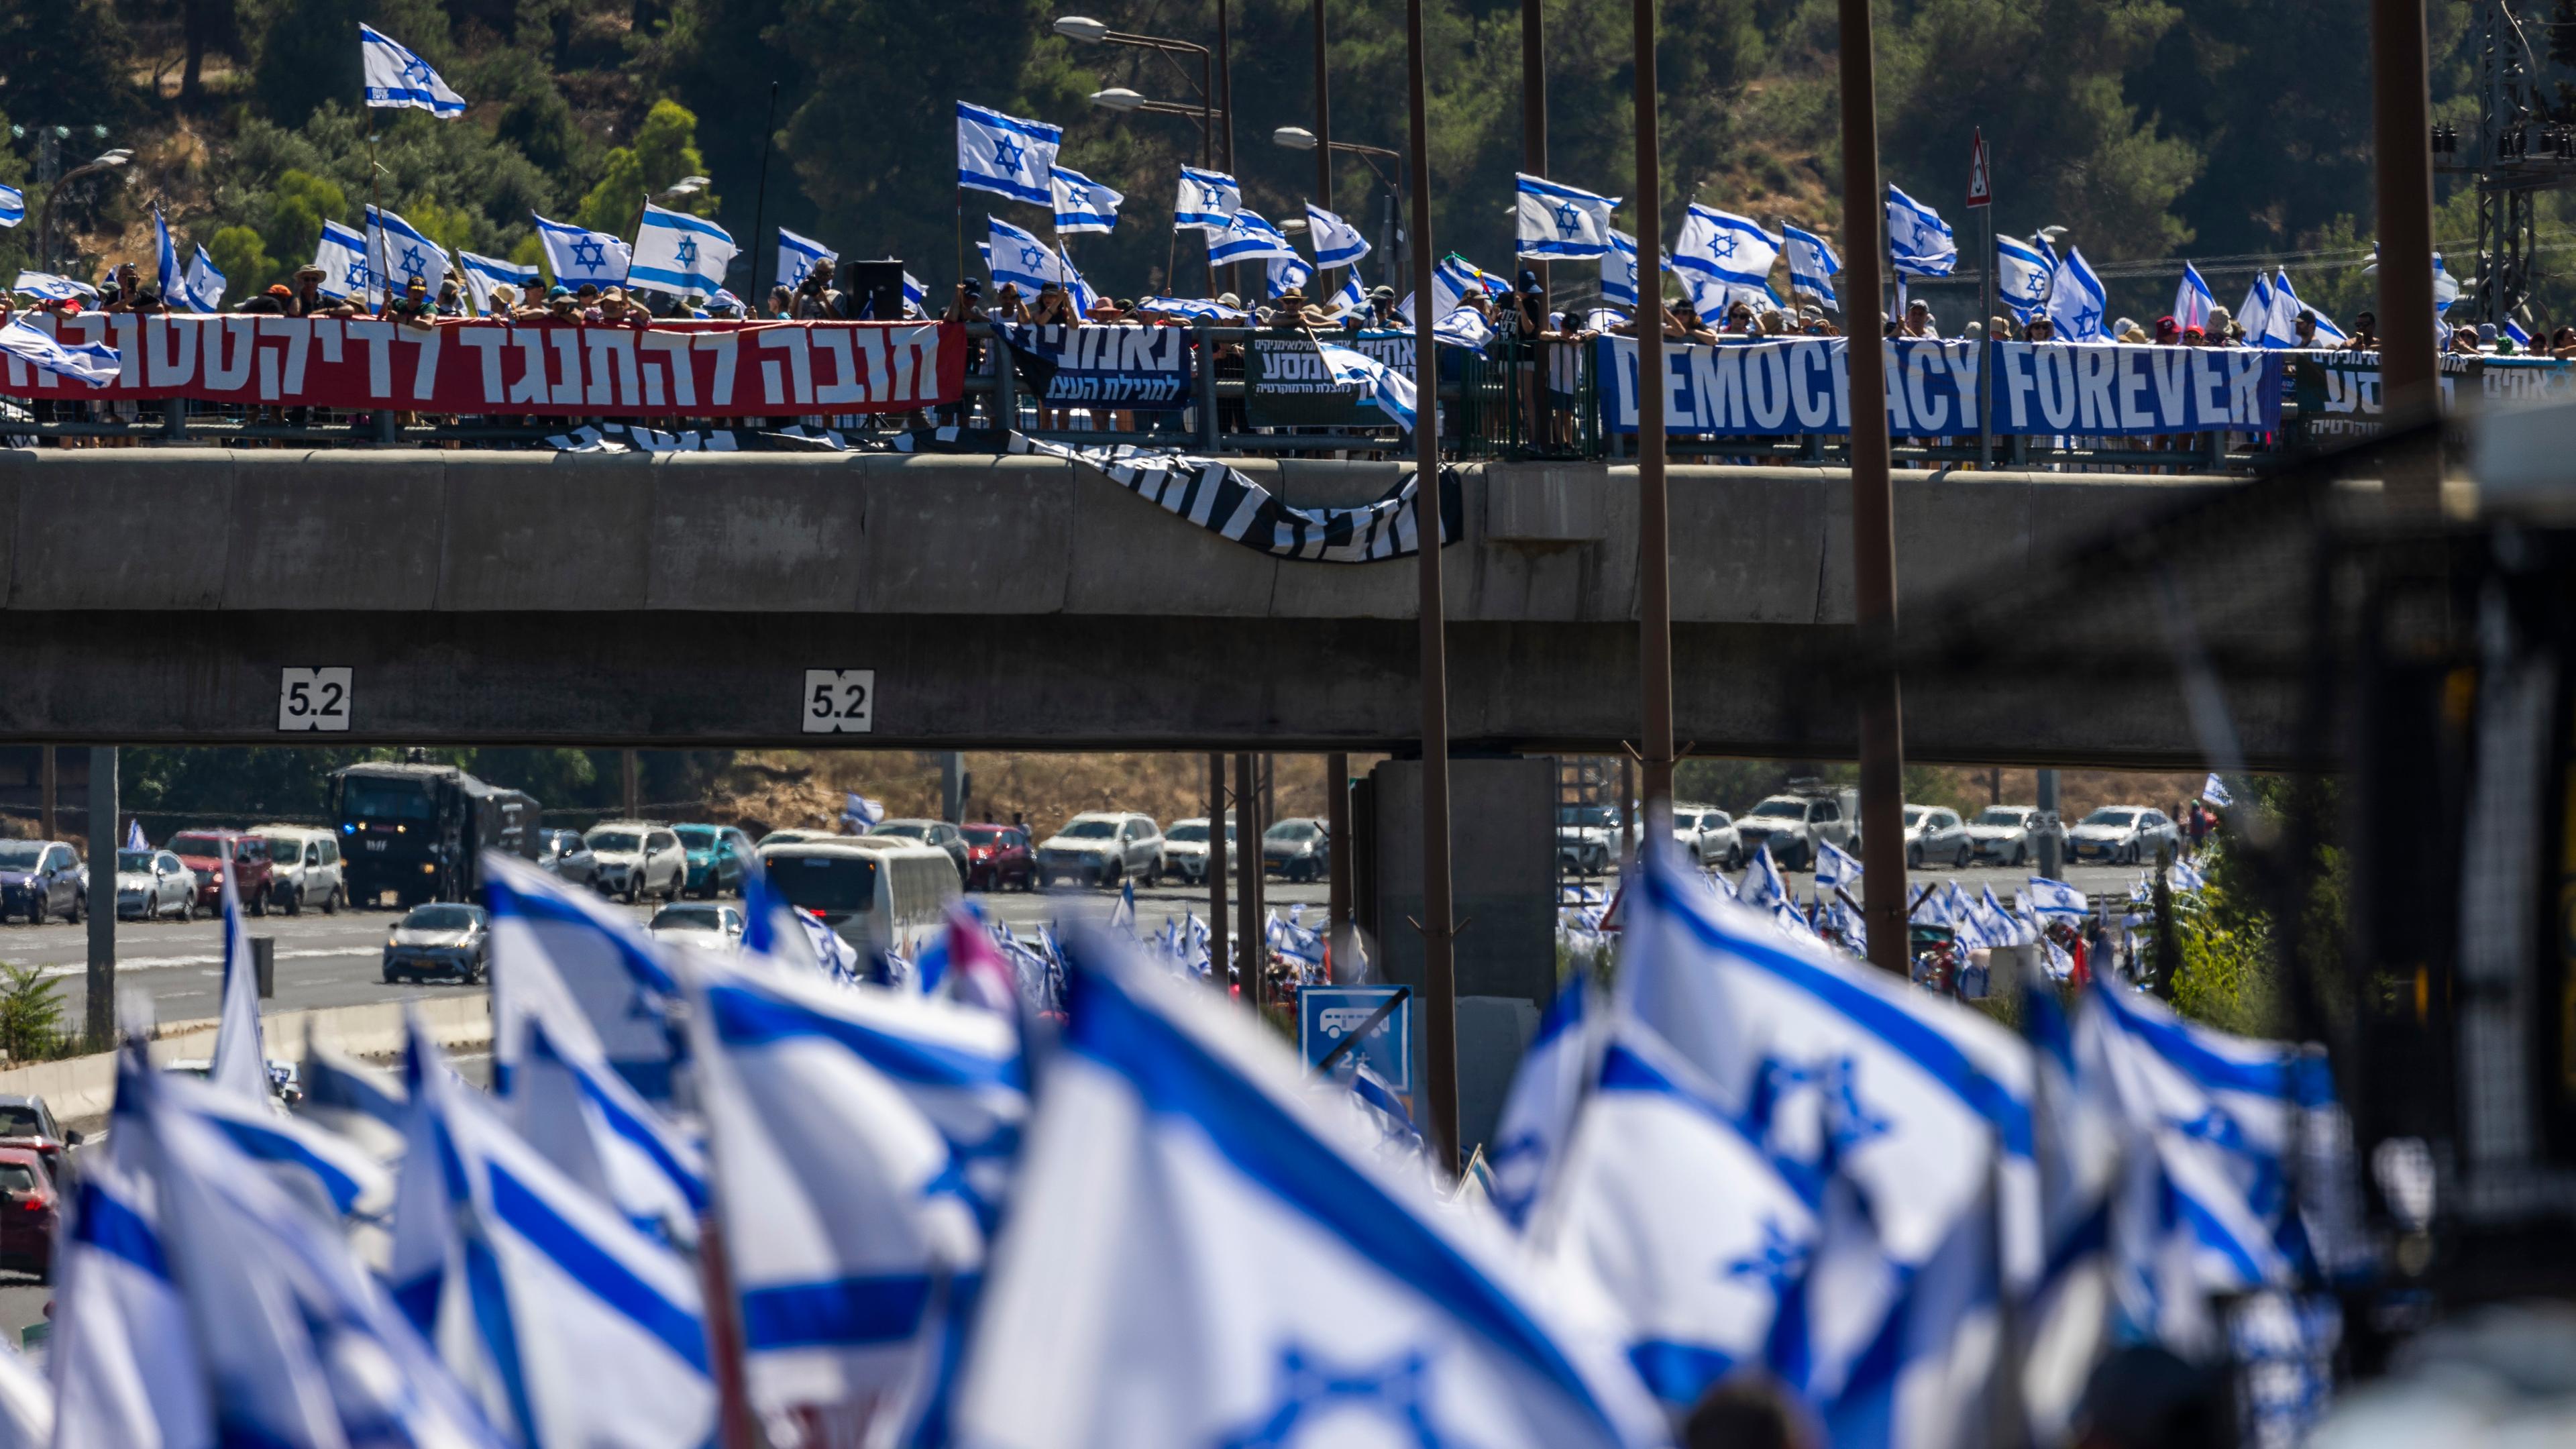 Tausende israelische Demonstranten marschieren entlang einer Autobahn, um gegen die geplante Justizreform der Regierung des israelischen Ministerpräsidenten Netanjahu zu protestieren.